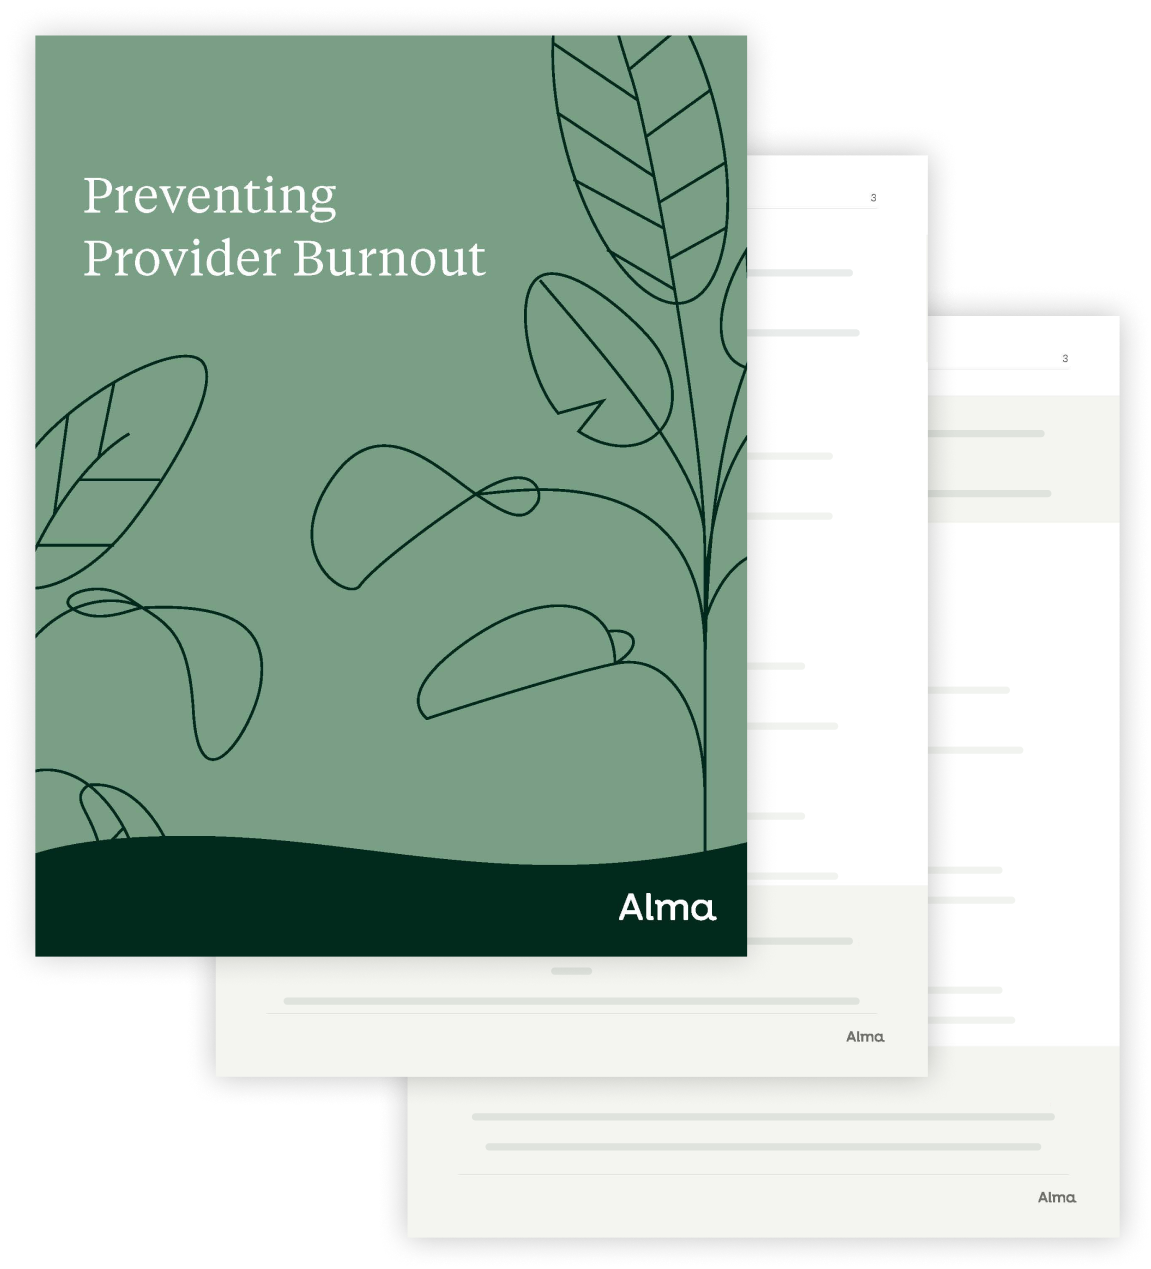 Alma's Preventing Provider Burnout guide